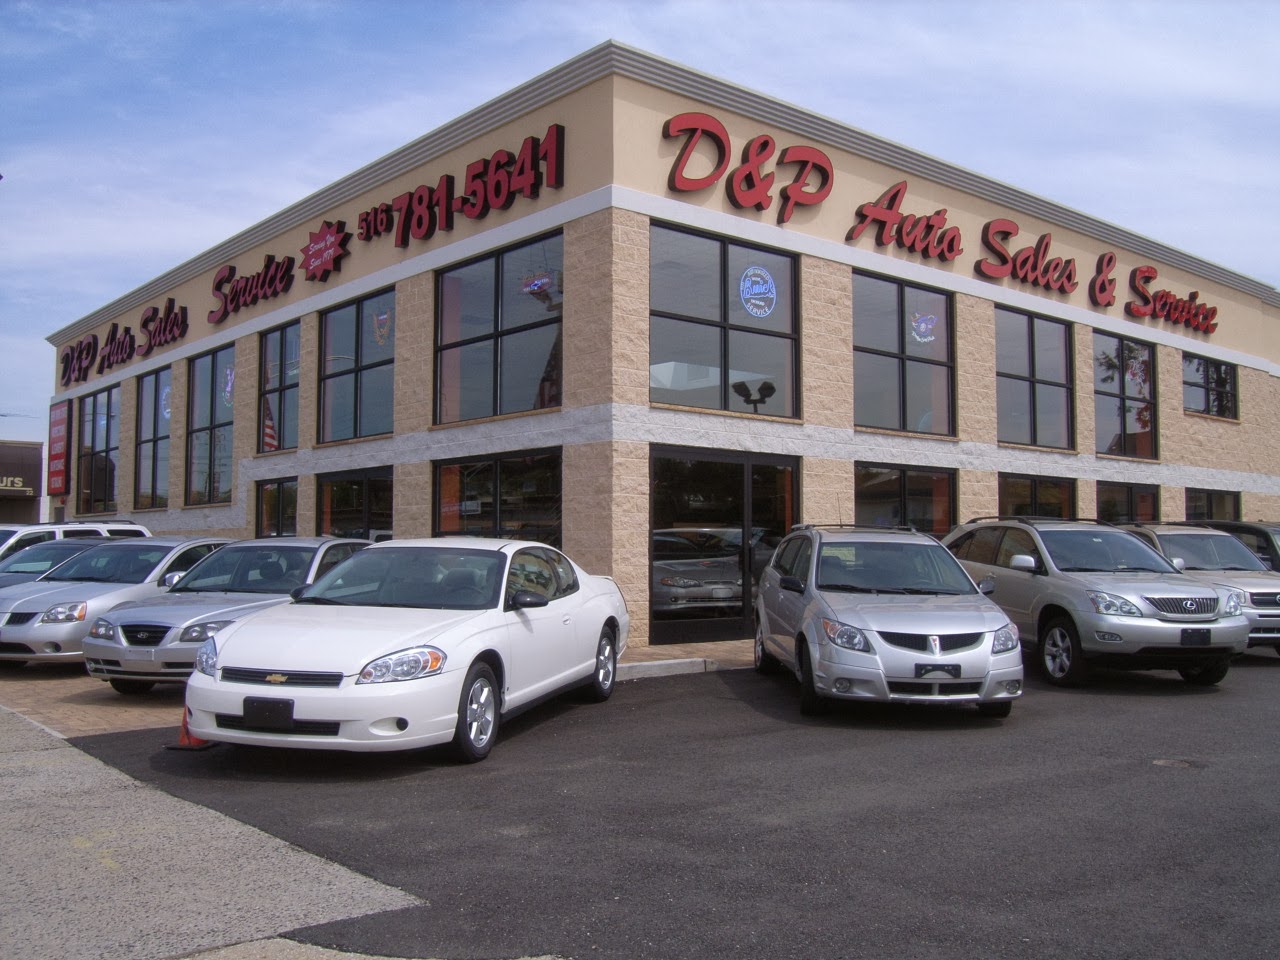 D&P Auto Sales & Service